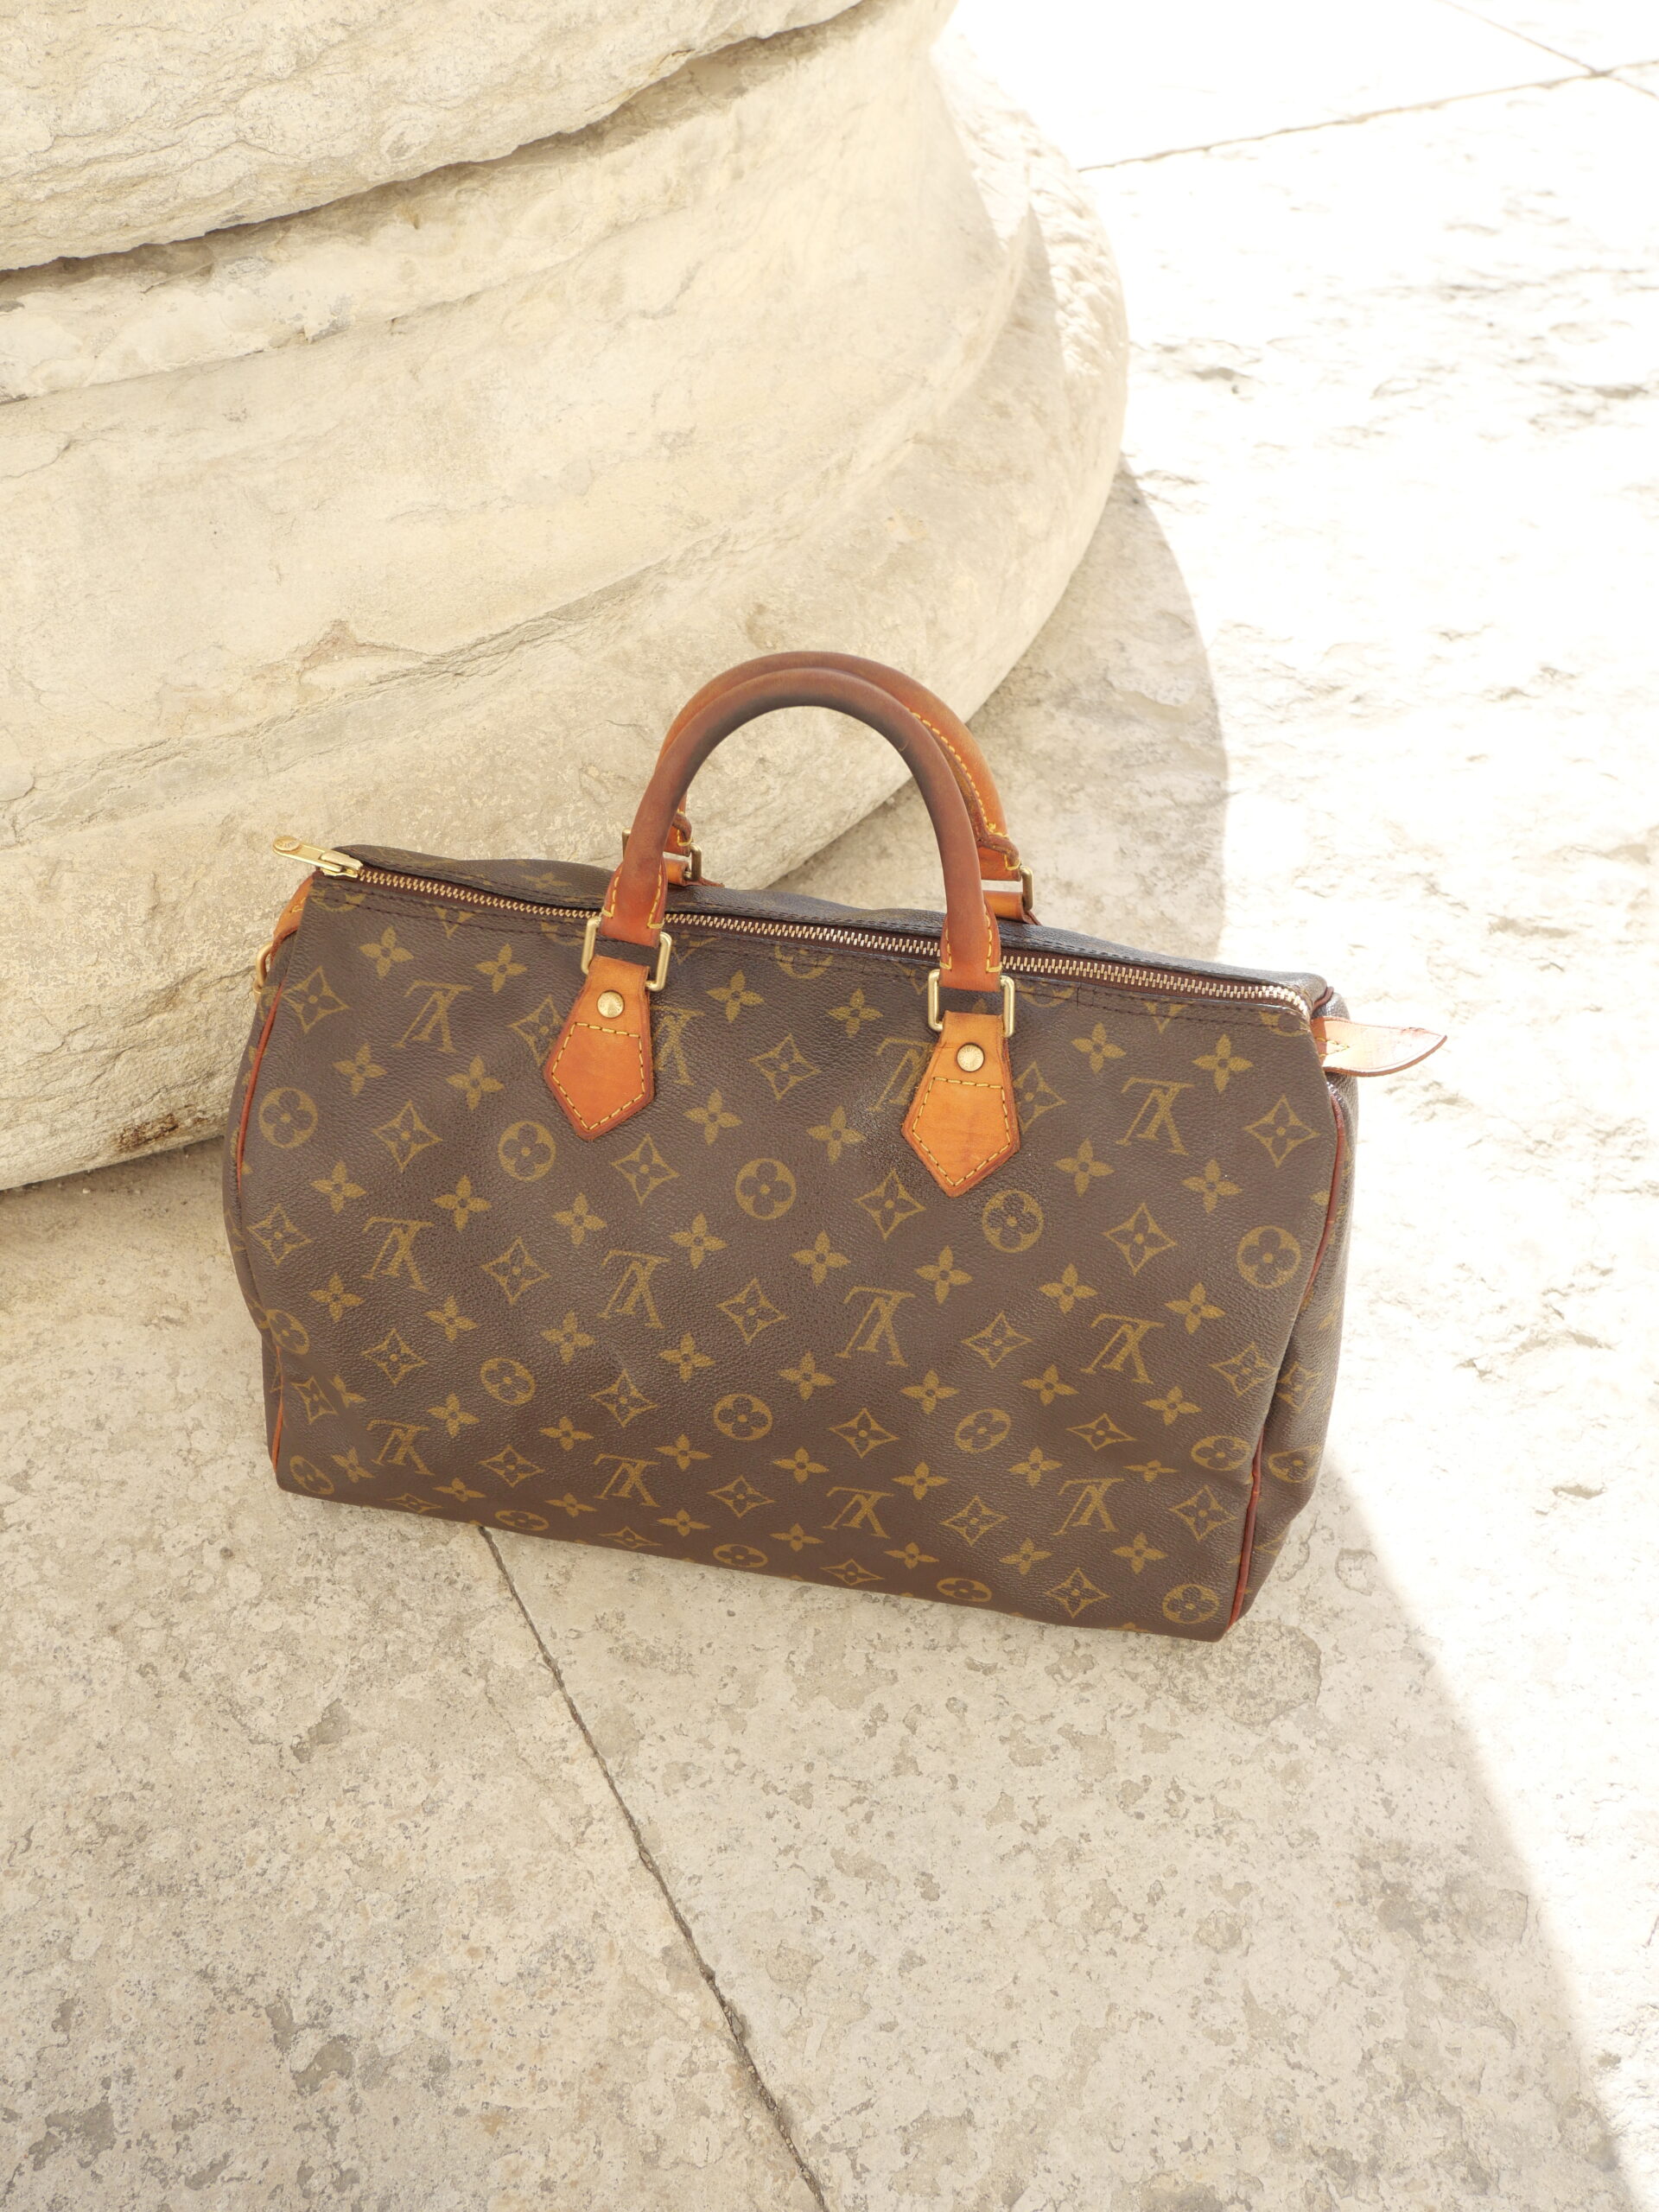 Louis Vuitton Taschen kaufen: Alle Modelle im Überblick